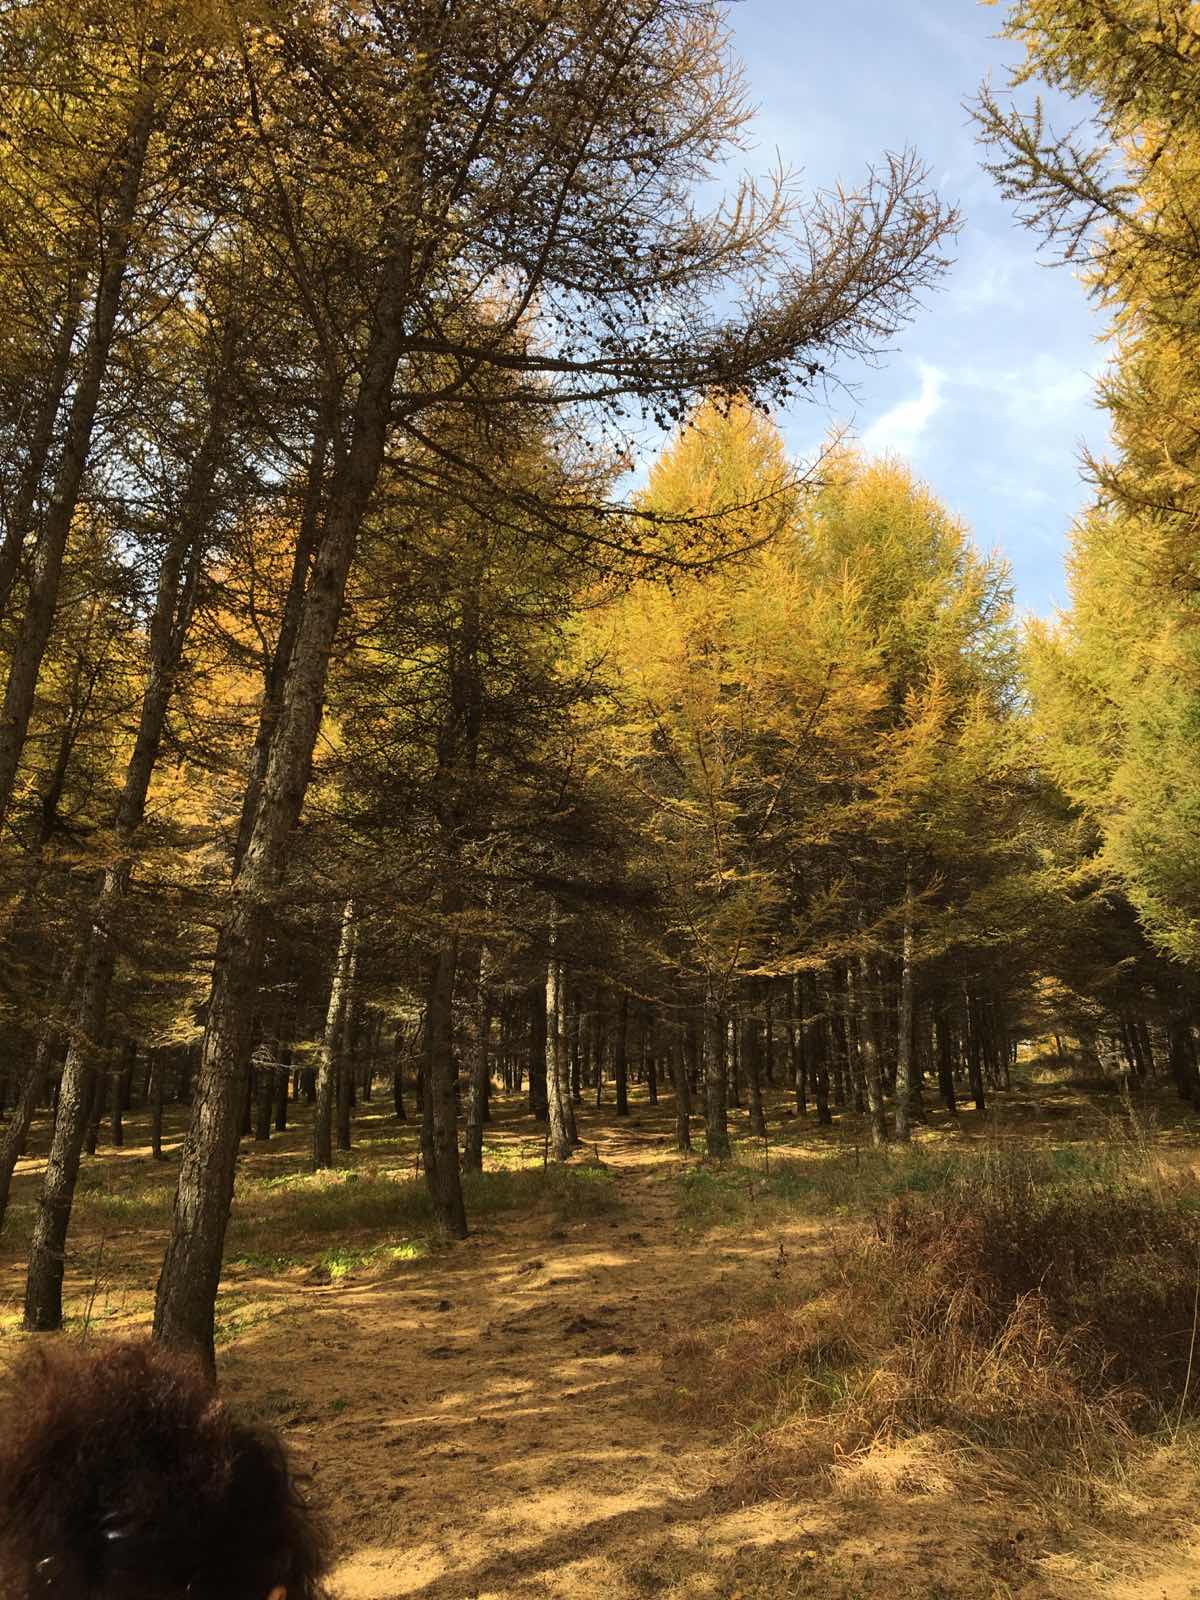 景色很美，秋天的颜色是黄棕相间，很有层次感！尤其喜欢路旁的树林，地上都